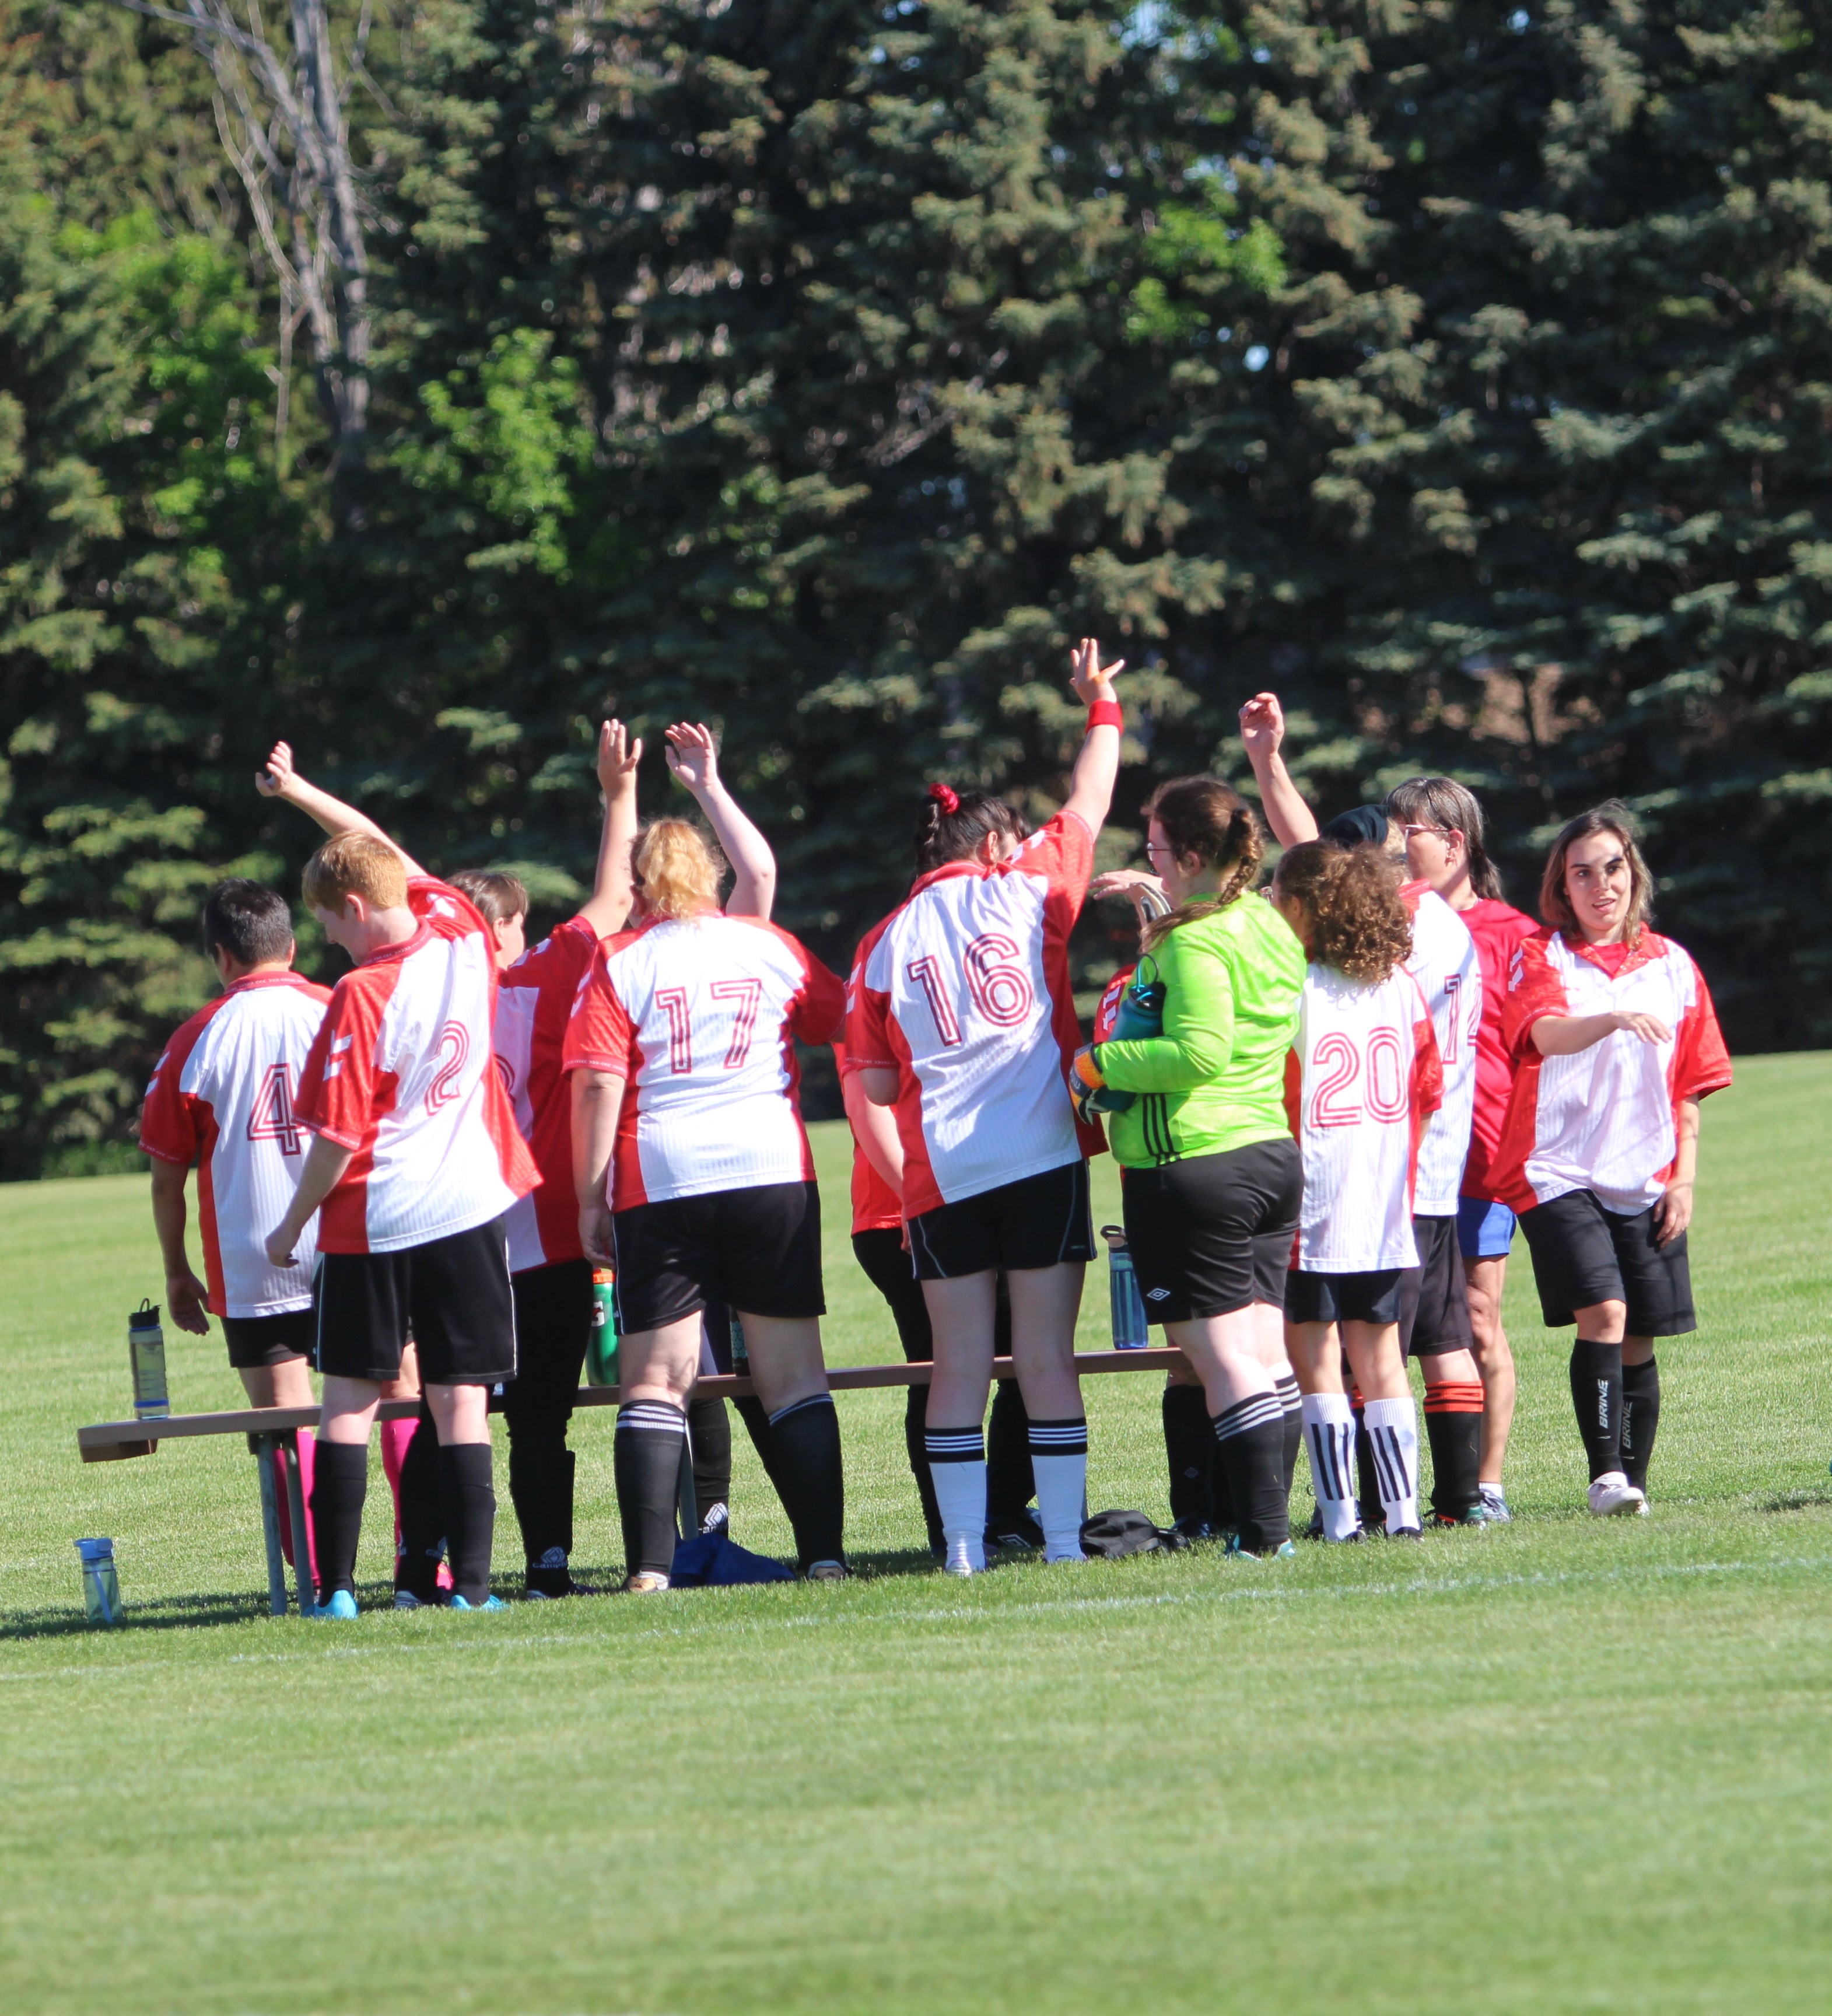 A women's soccer team gathers in a field